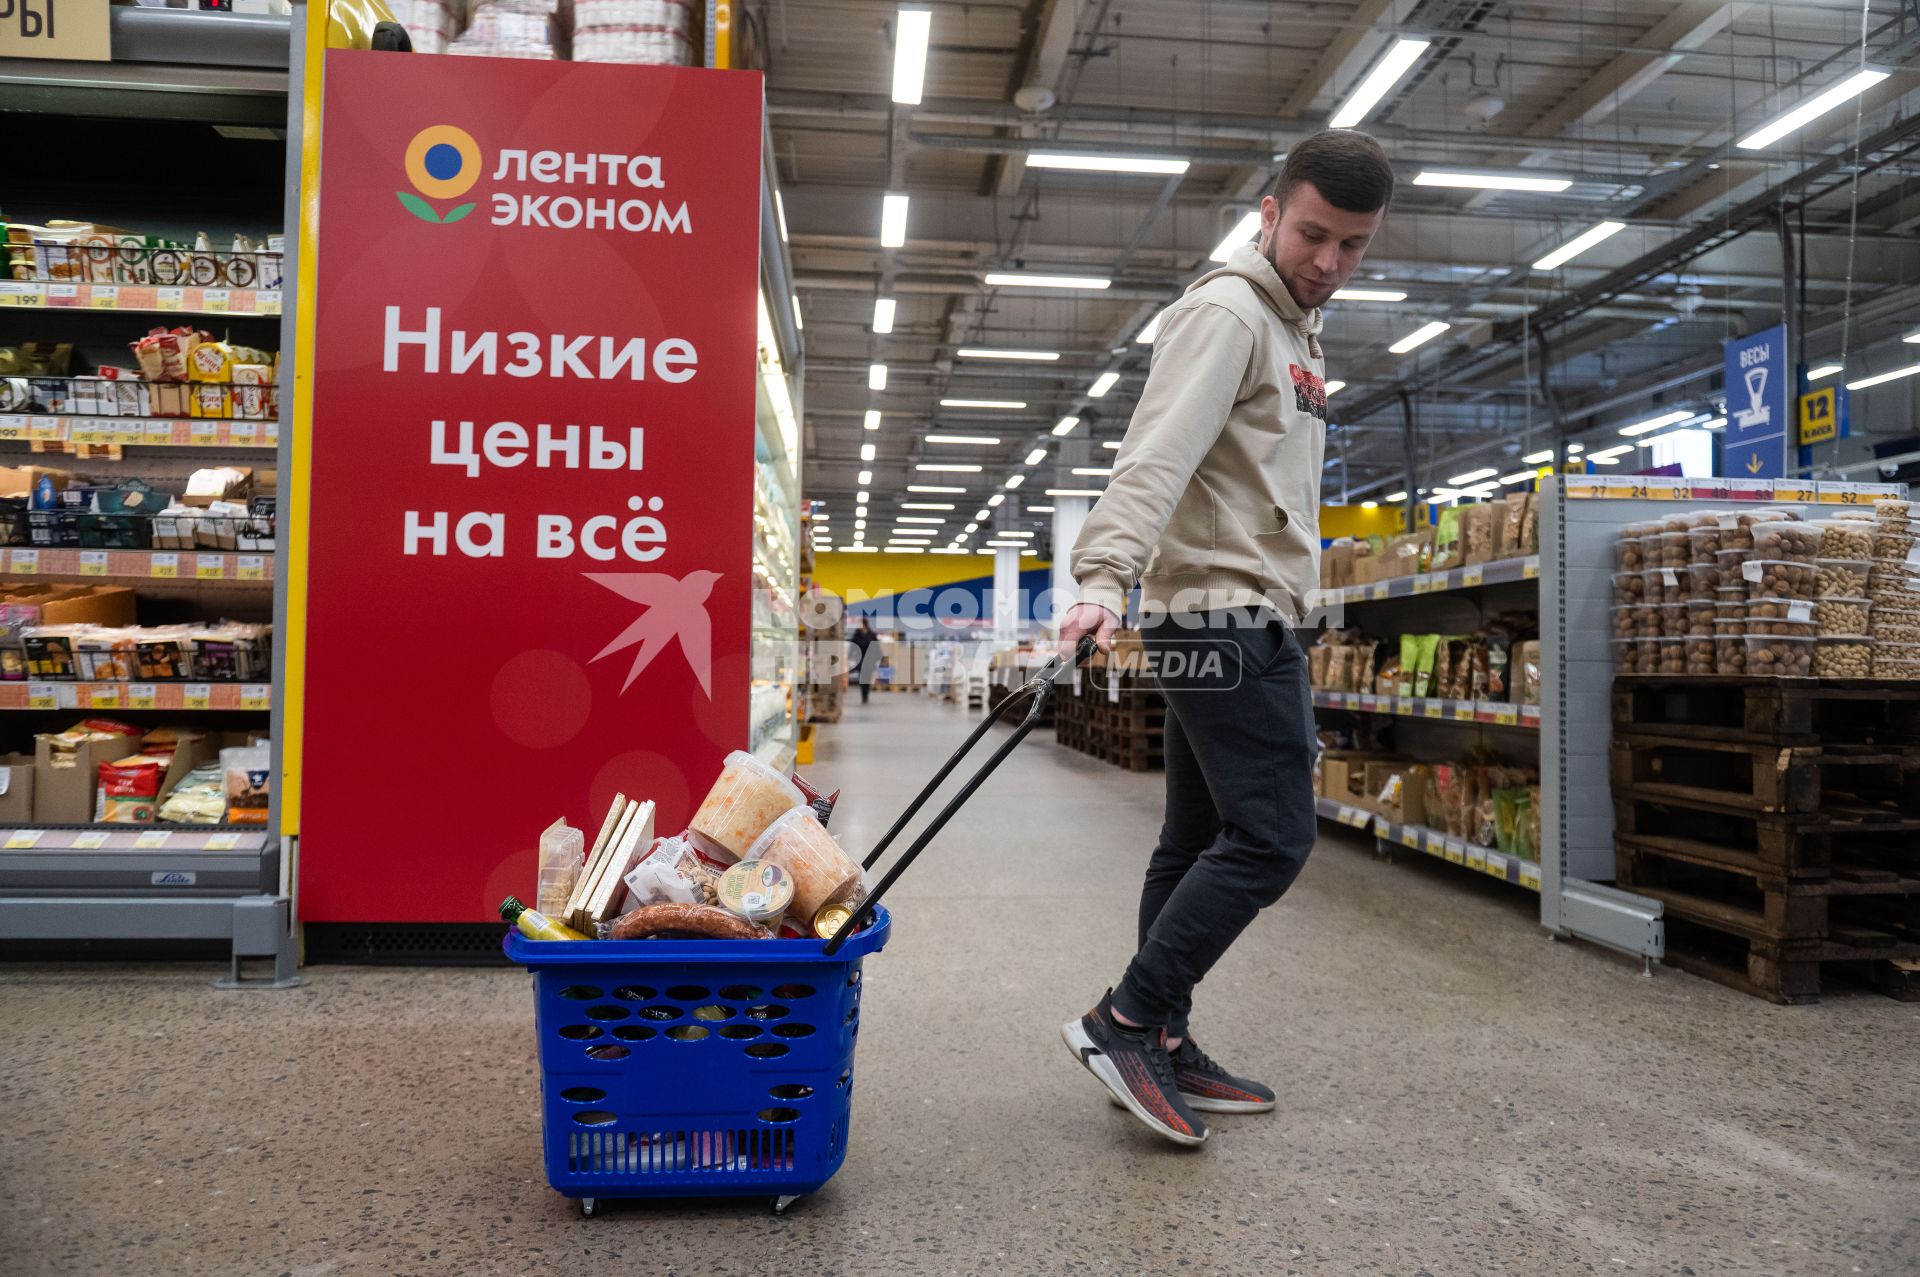 Санкт-Петербург. Мужчина с наполненной продуктовой корзиной в супермаркете.